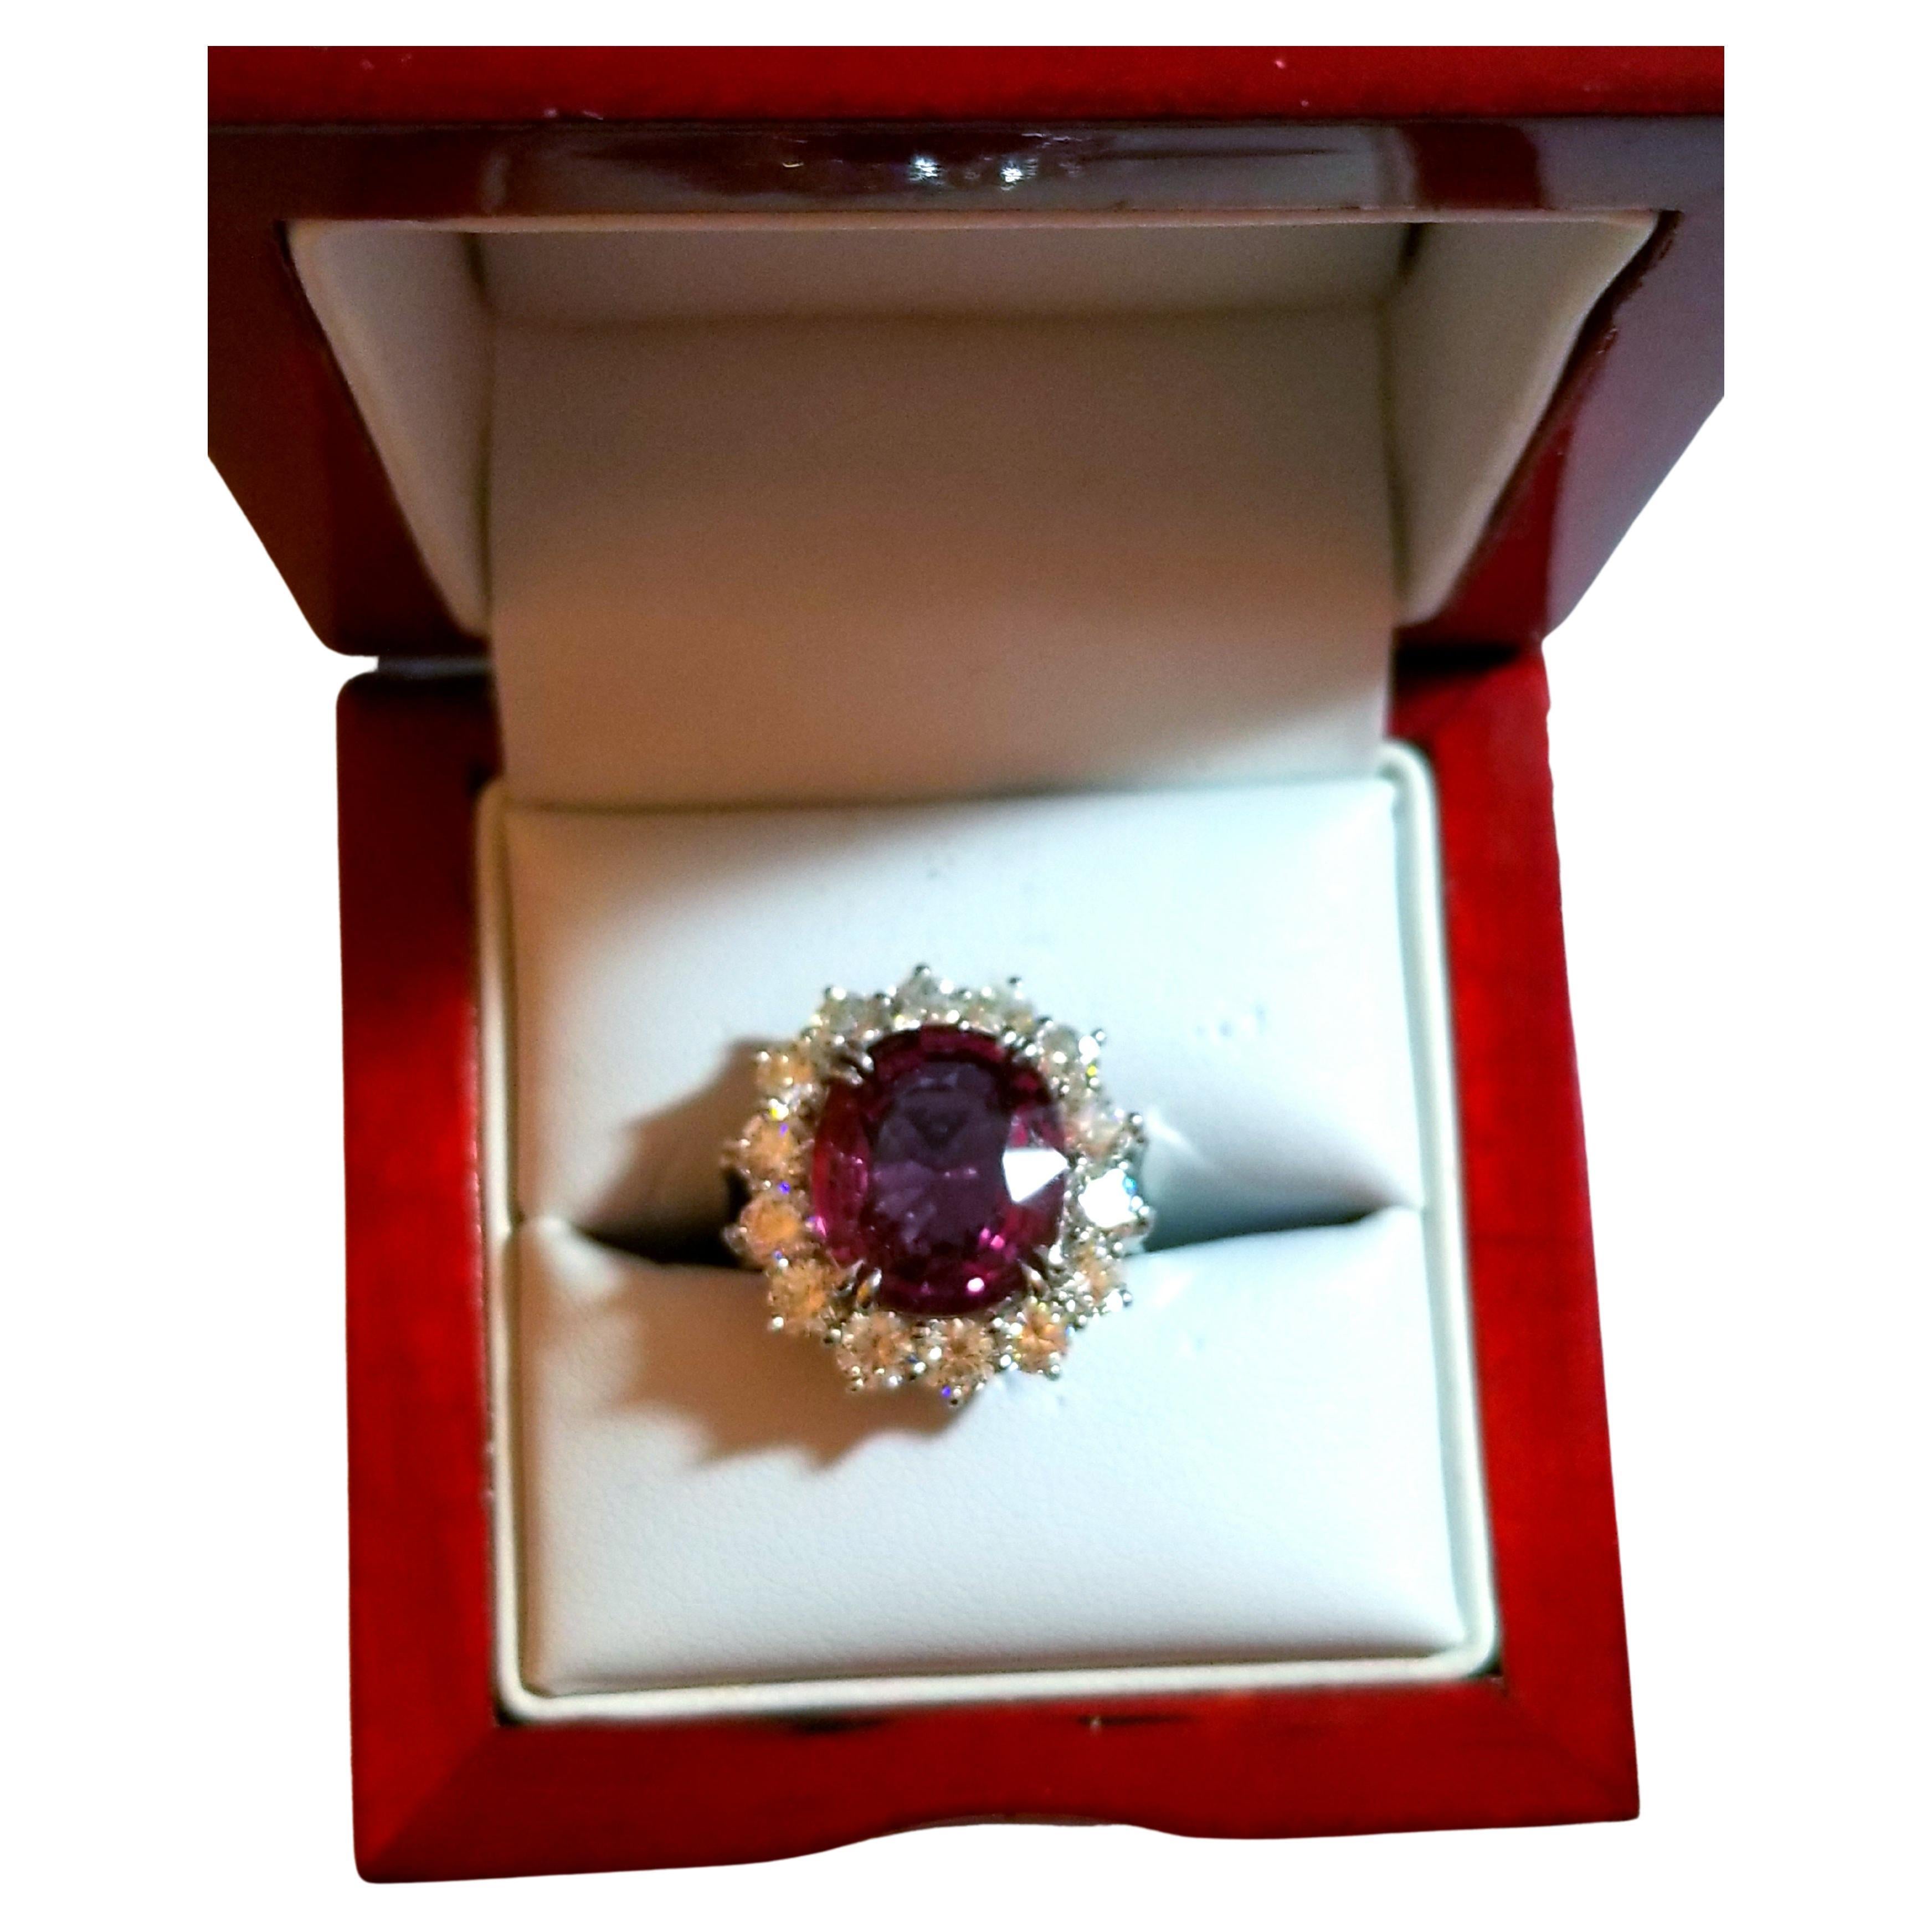 Dieser atemberaubende Ring von LaFrancee ist eine wahre Schönheit mit einem 6,77 Karat großen, natürlichen, rosafarbenen Spinell und diamantenen Akzenten, die in Platin gefasst sind. Der Ring ist in brandneuem Zustand, nie getragen und kommt mit